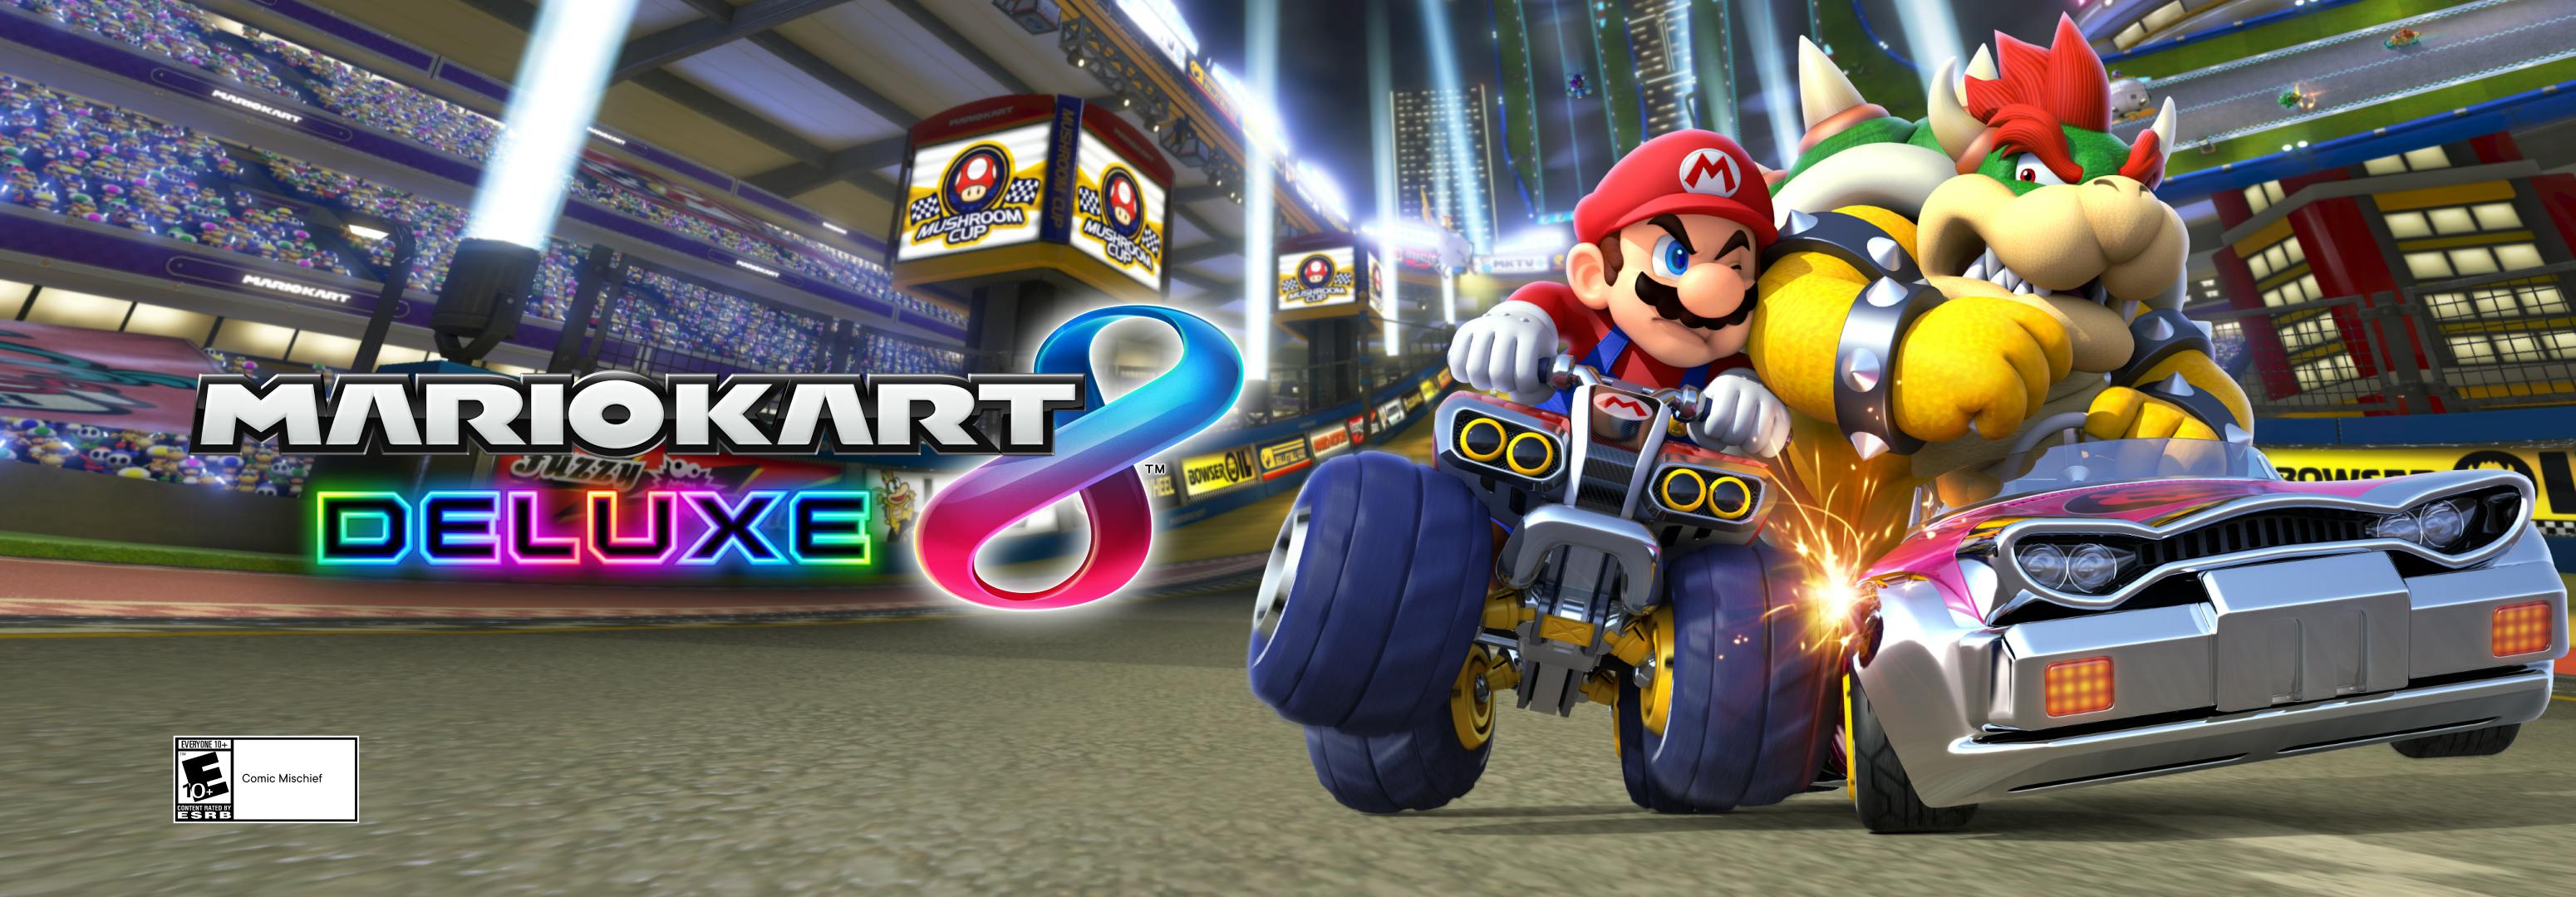 Mario Kart 8 Deluxe - High School Esports